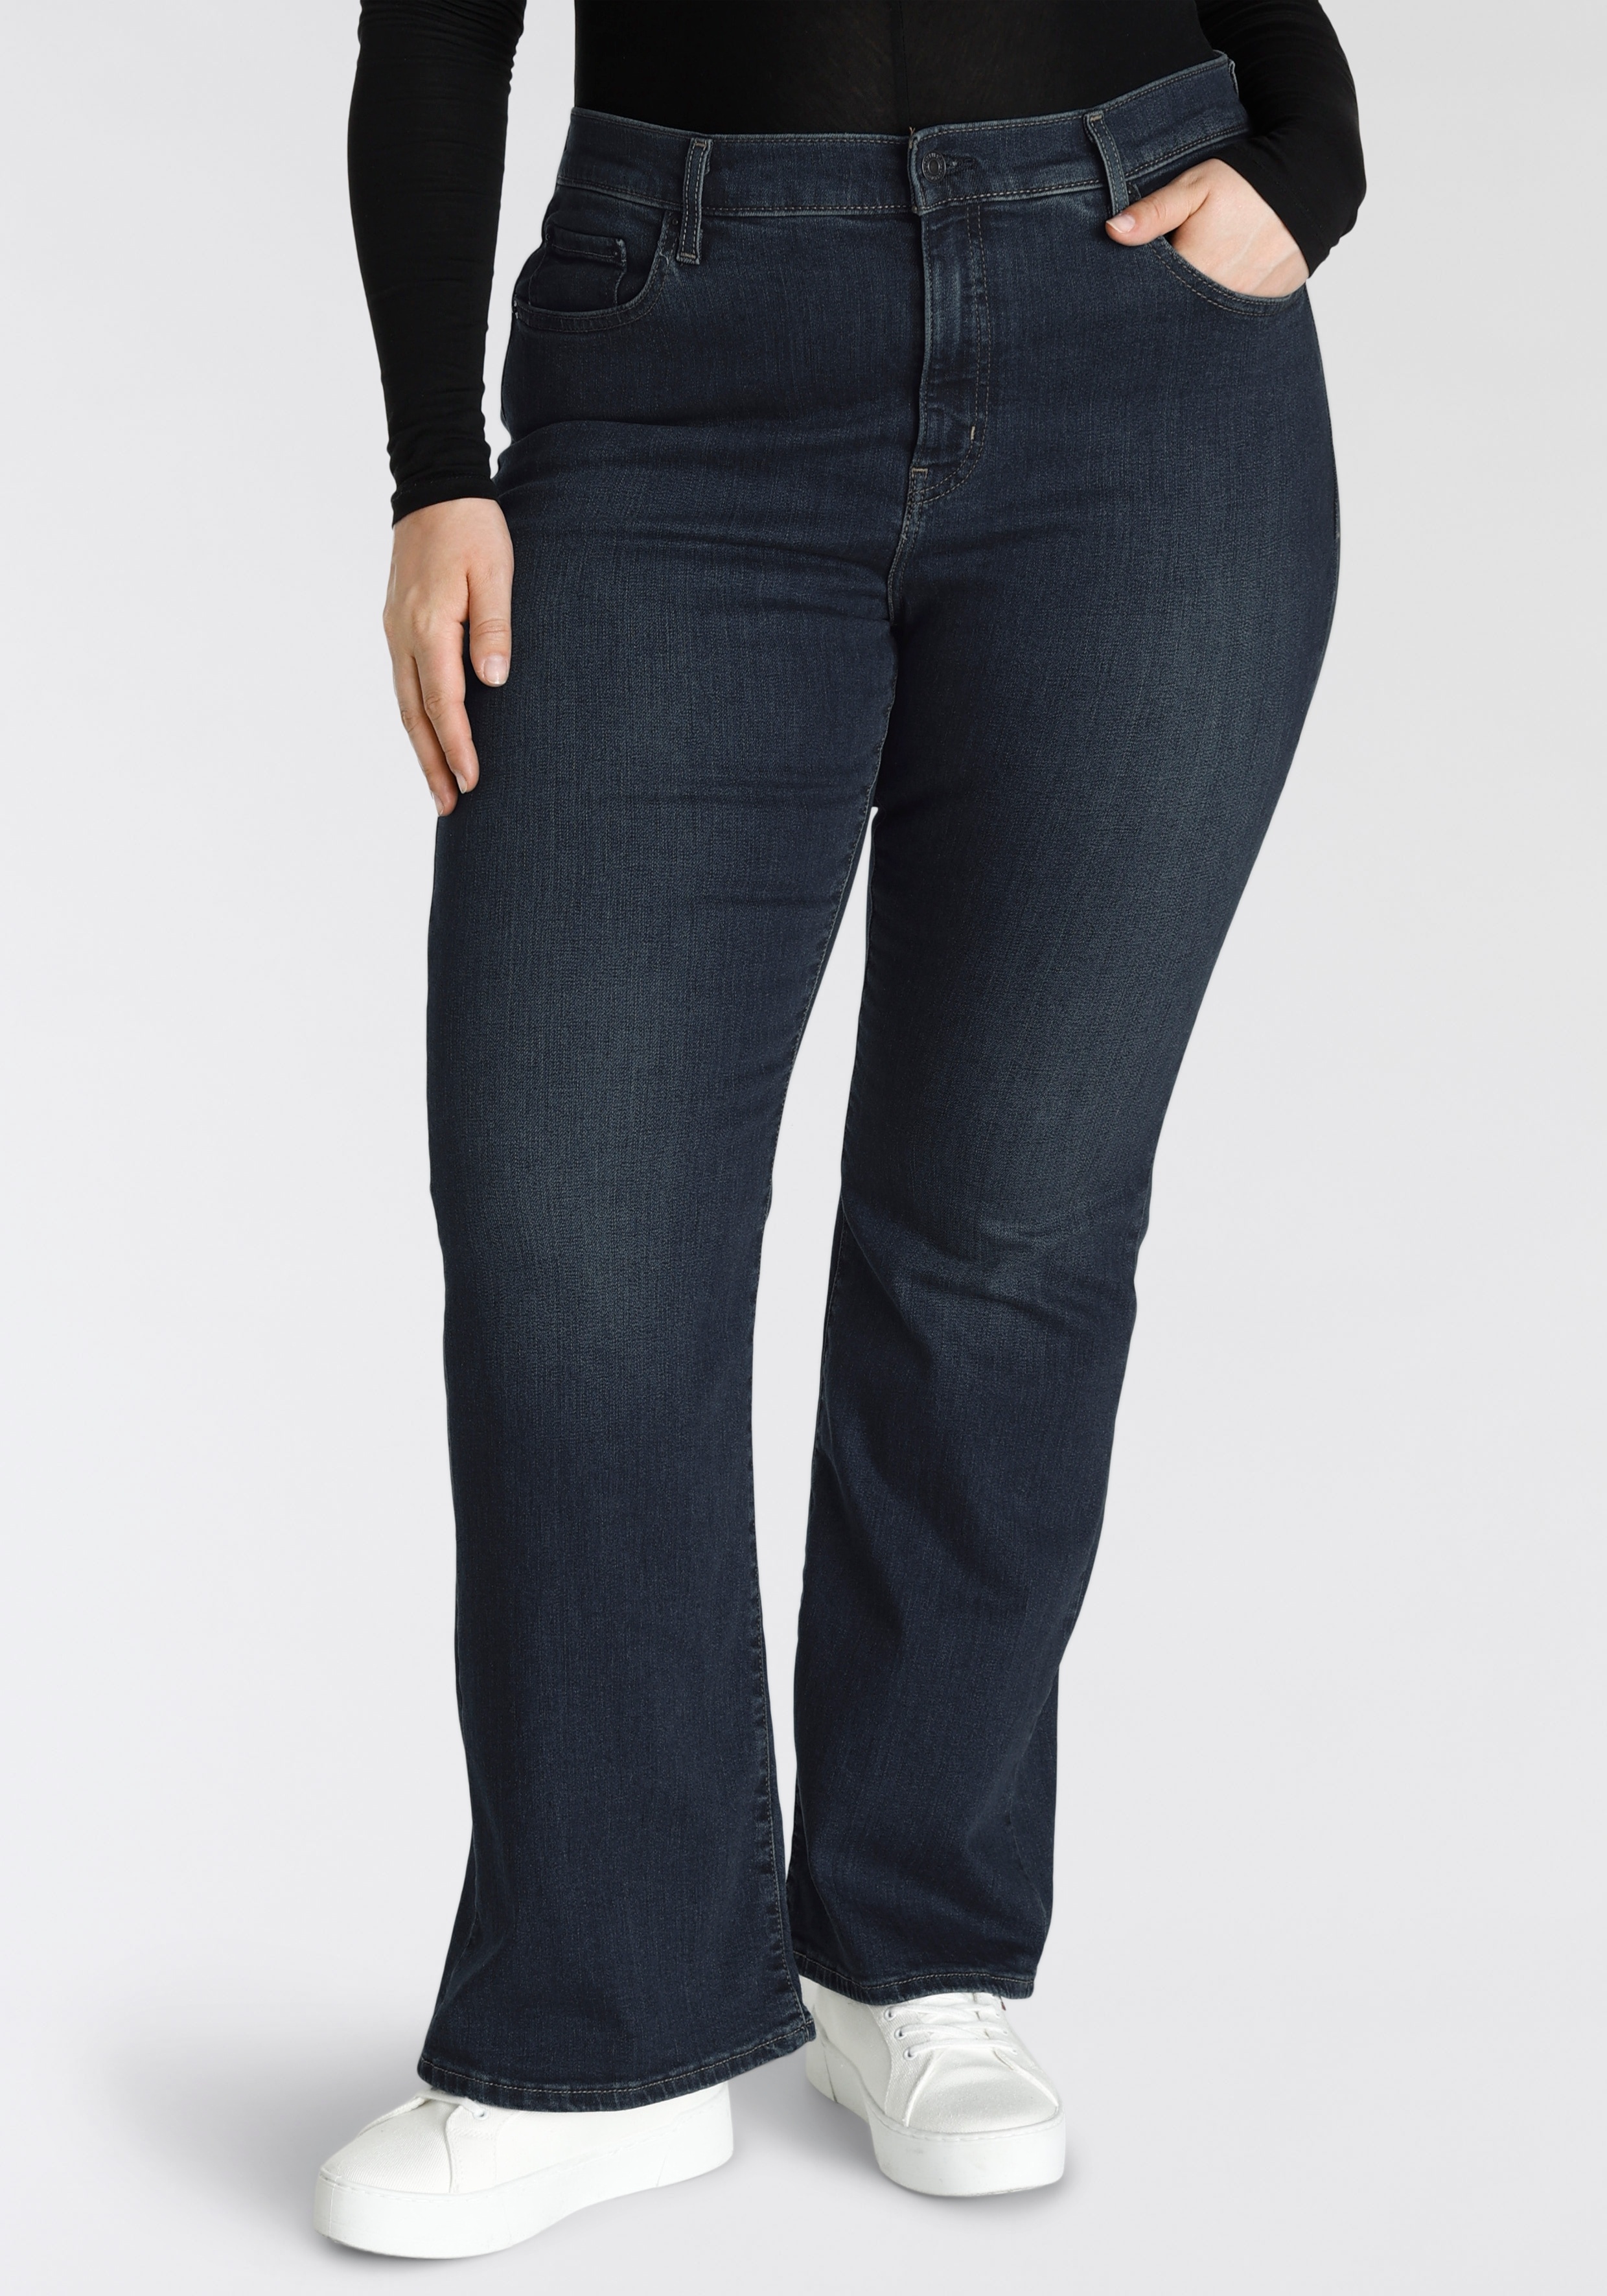 Bootcut-Jeans LEVI'S PLUS "726 PL HR FLARE" Gr. 20 (50), Länge 30, blau (rinsed) Damen Jeans Bootcut